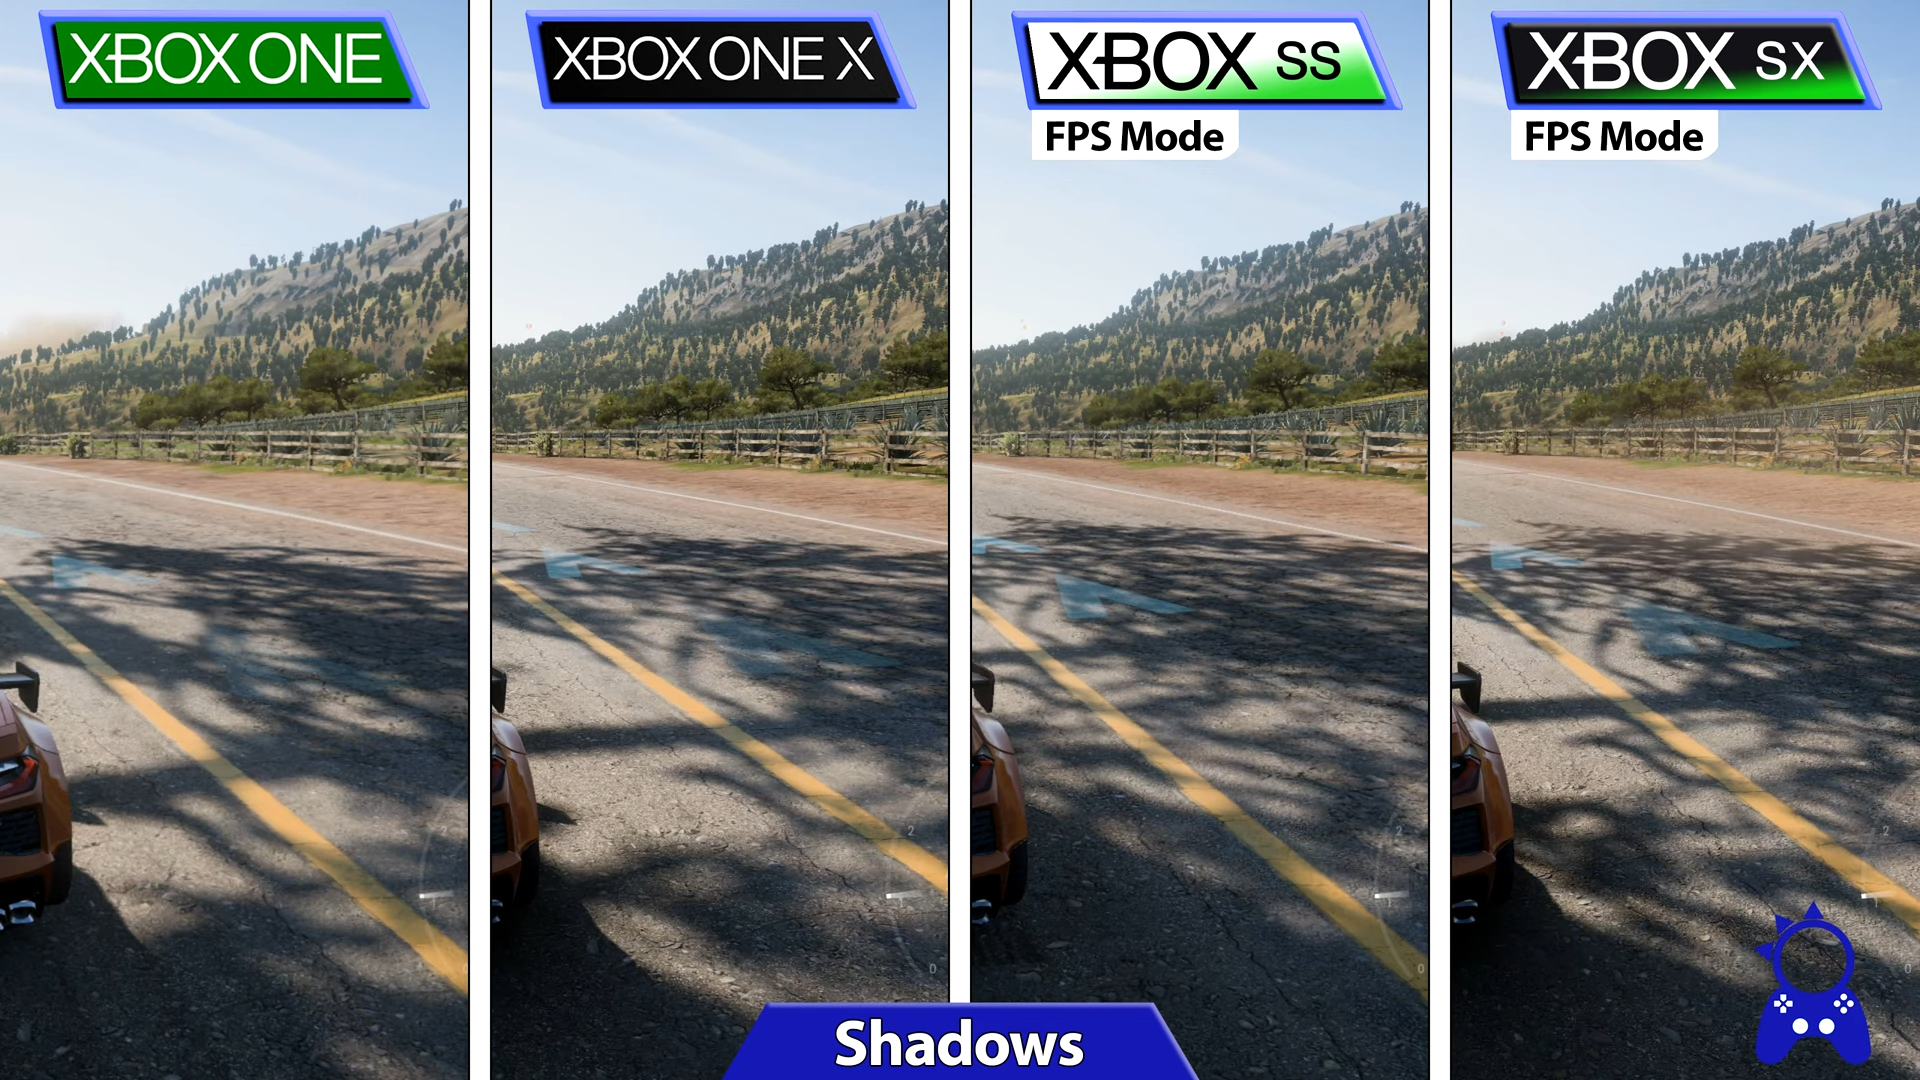 Гта 5 можно ли играть вдвоем. Forza Horizon 5 Xbox one vs Xbox Series x. Форза хорайзон 5 Xbox one x. Forza Horizon 5 Xbox Series x fps. Форза 5 сравнение графики.